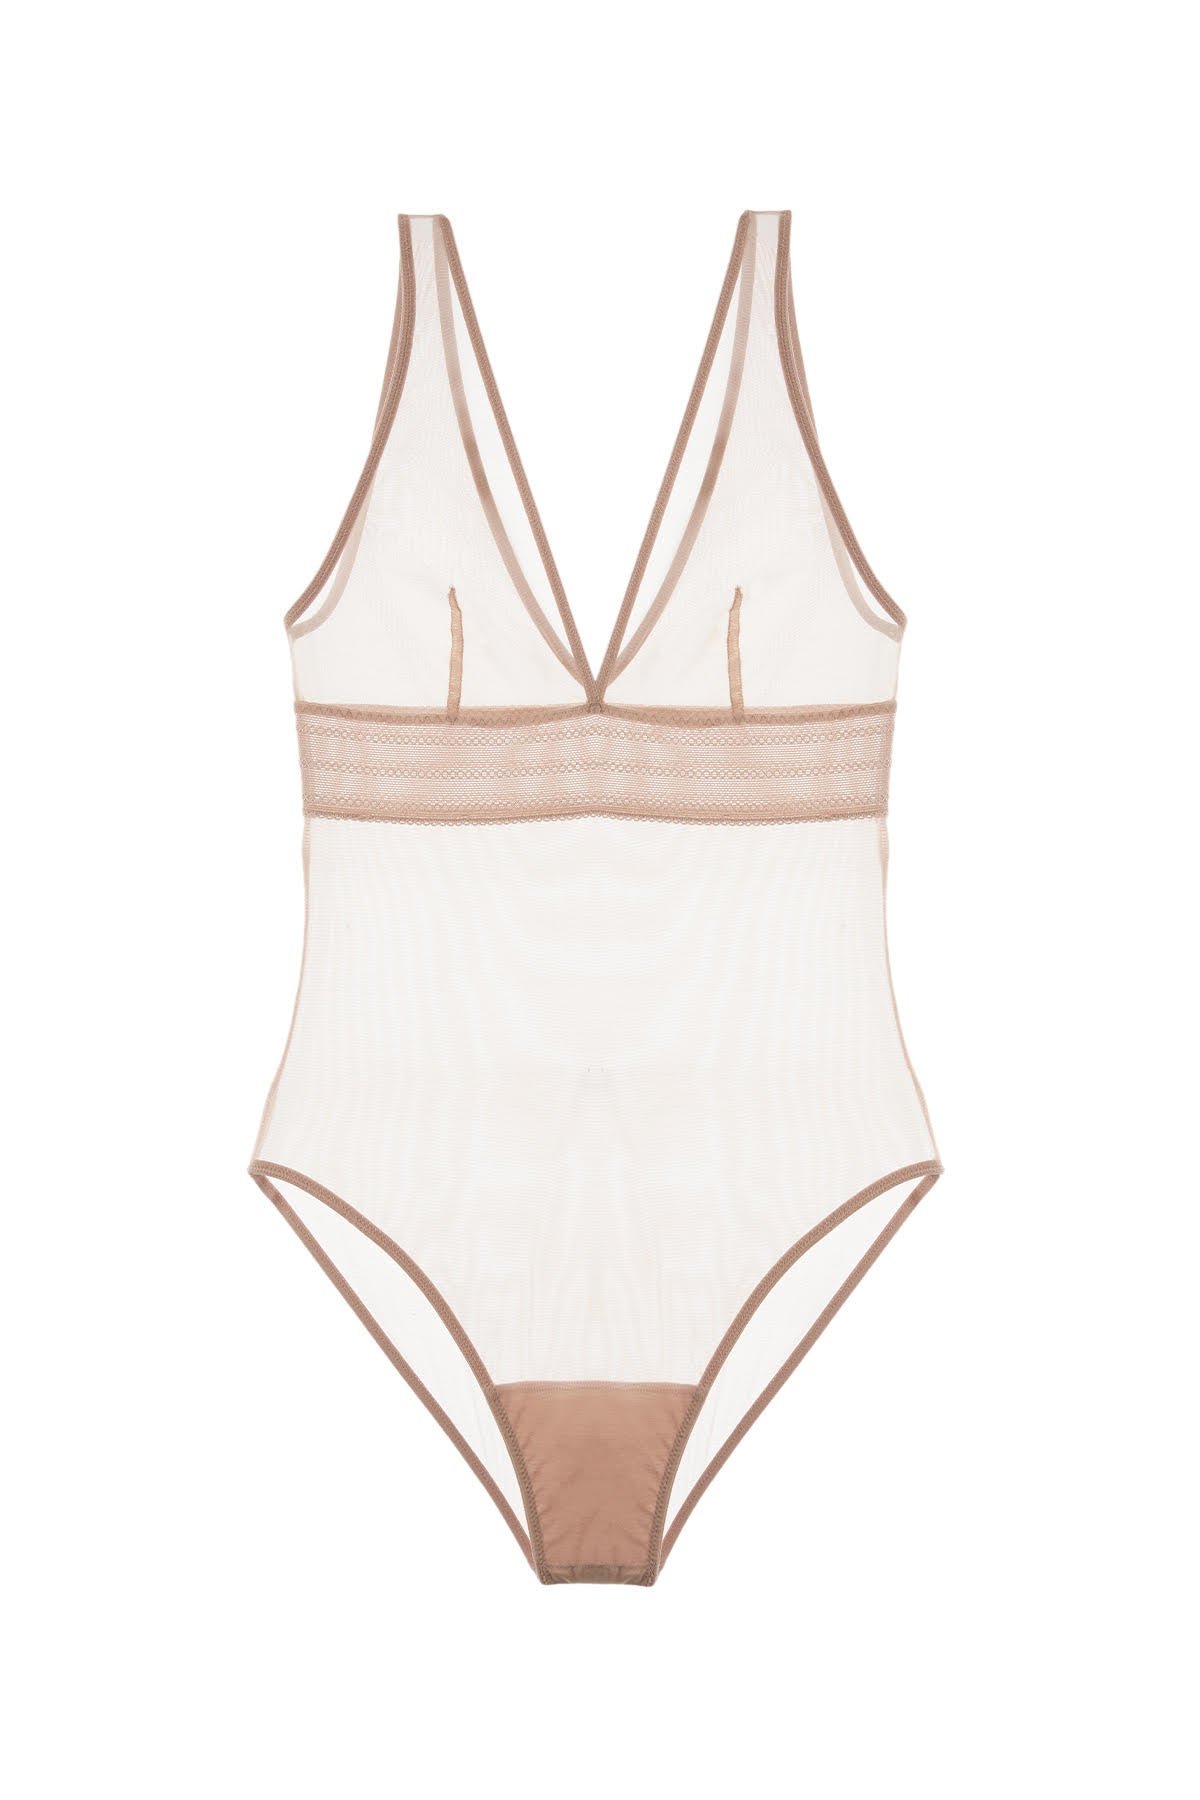 Else Lingerie | Acacia UW Strapless Bodysuit - Off White — Joon